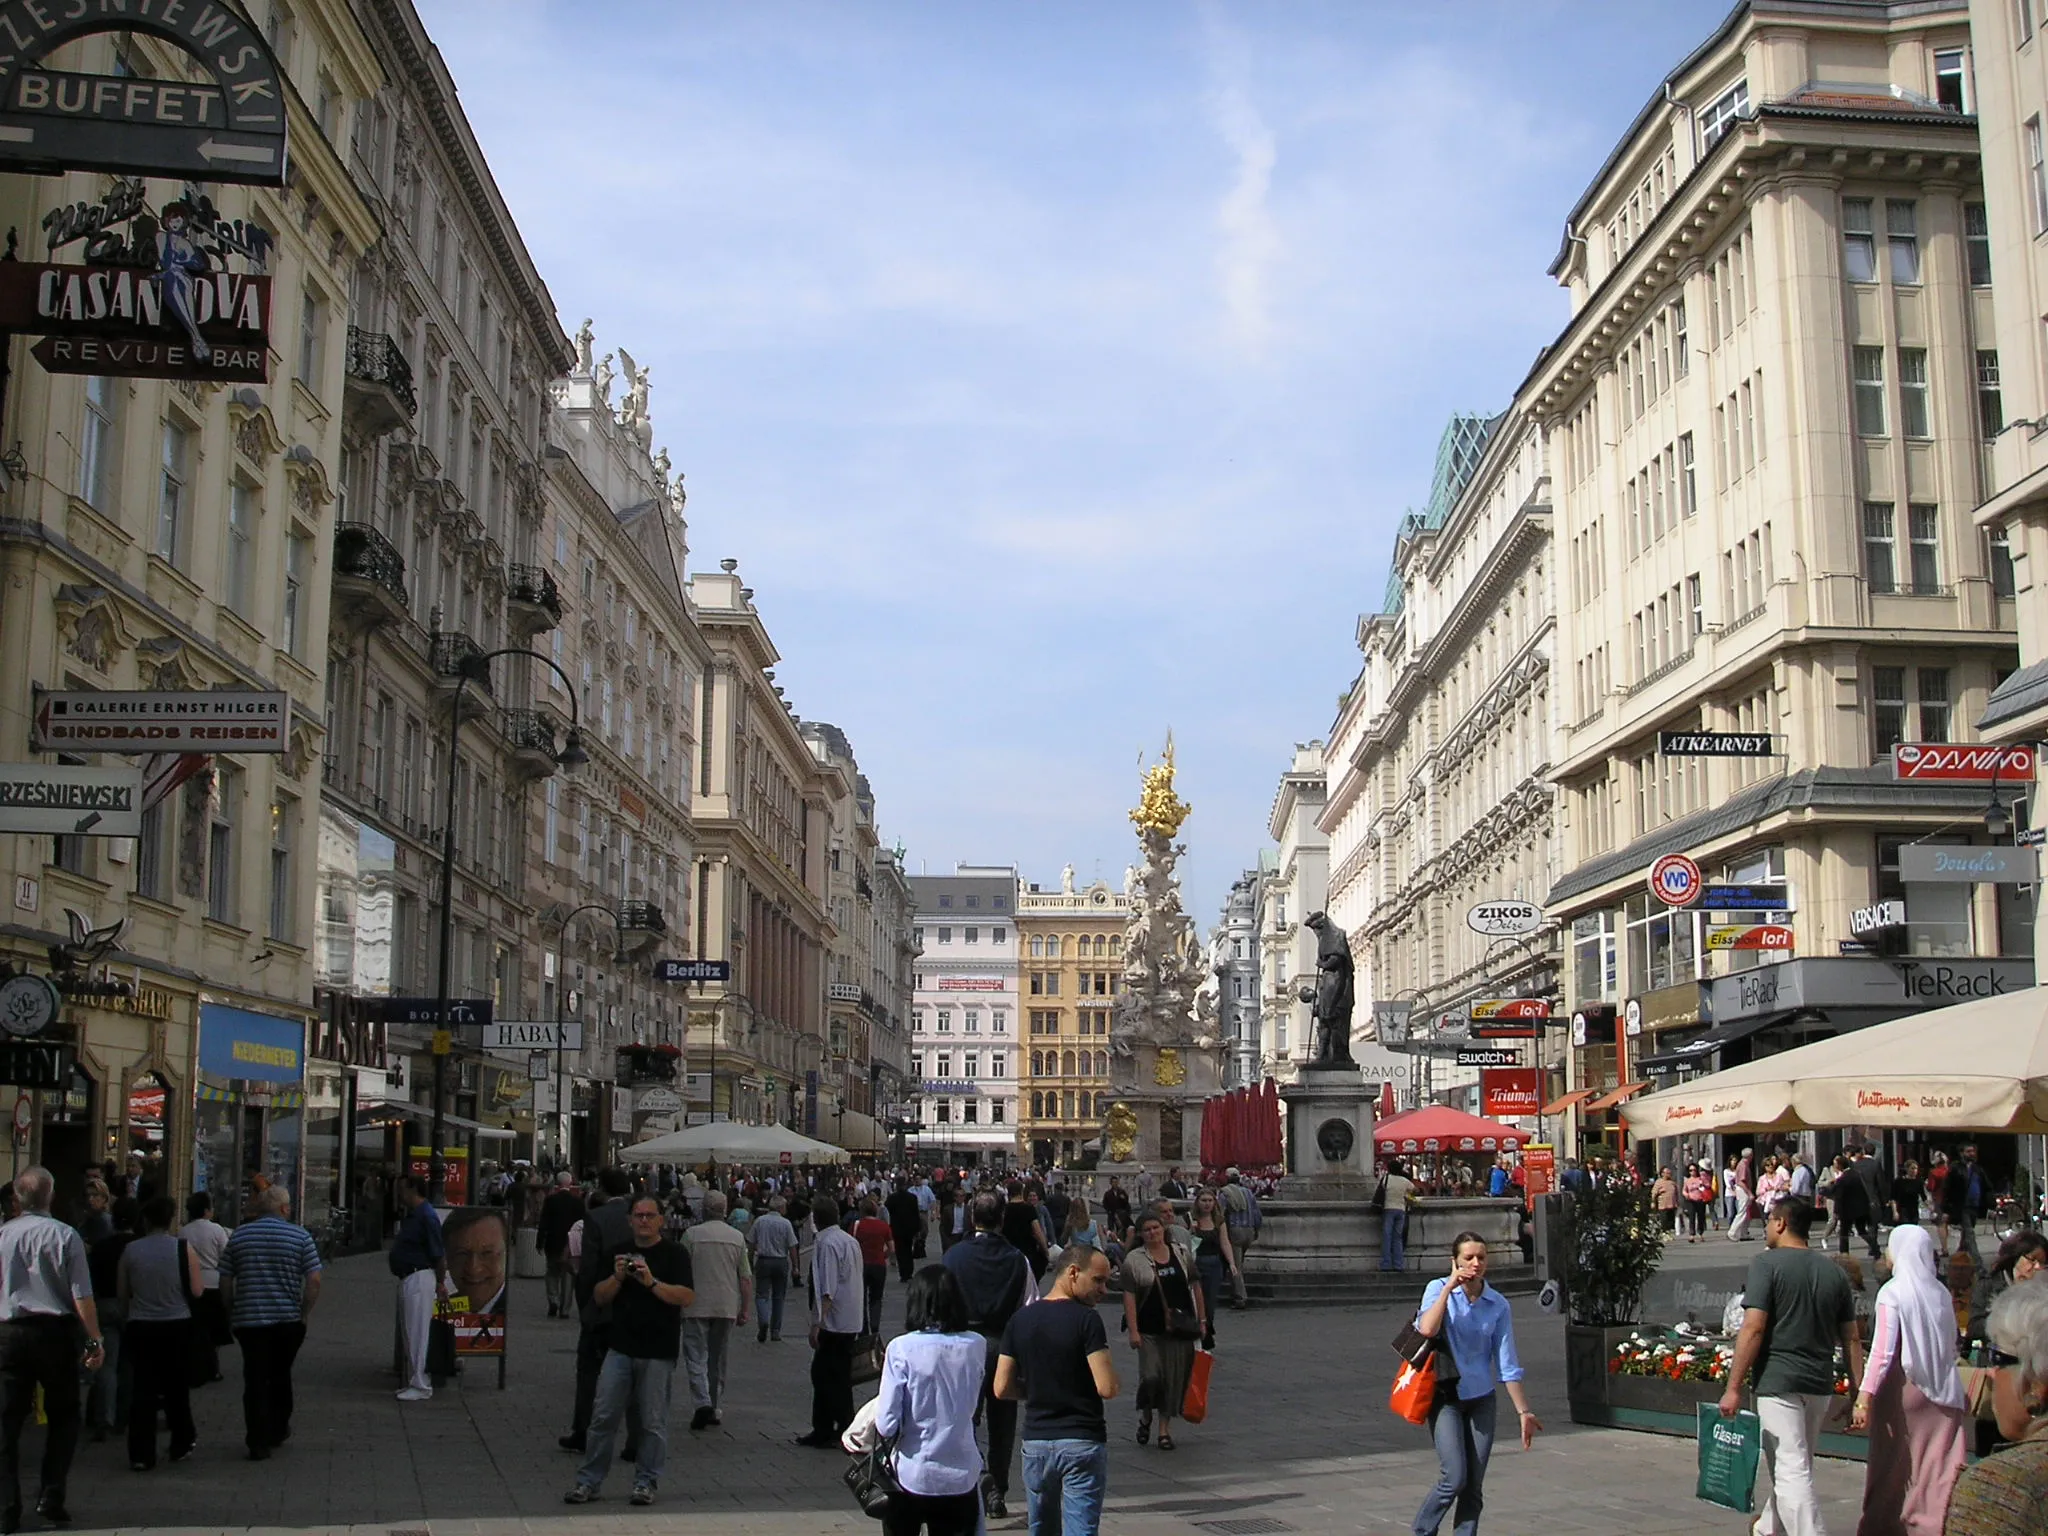 Image of Wien